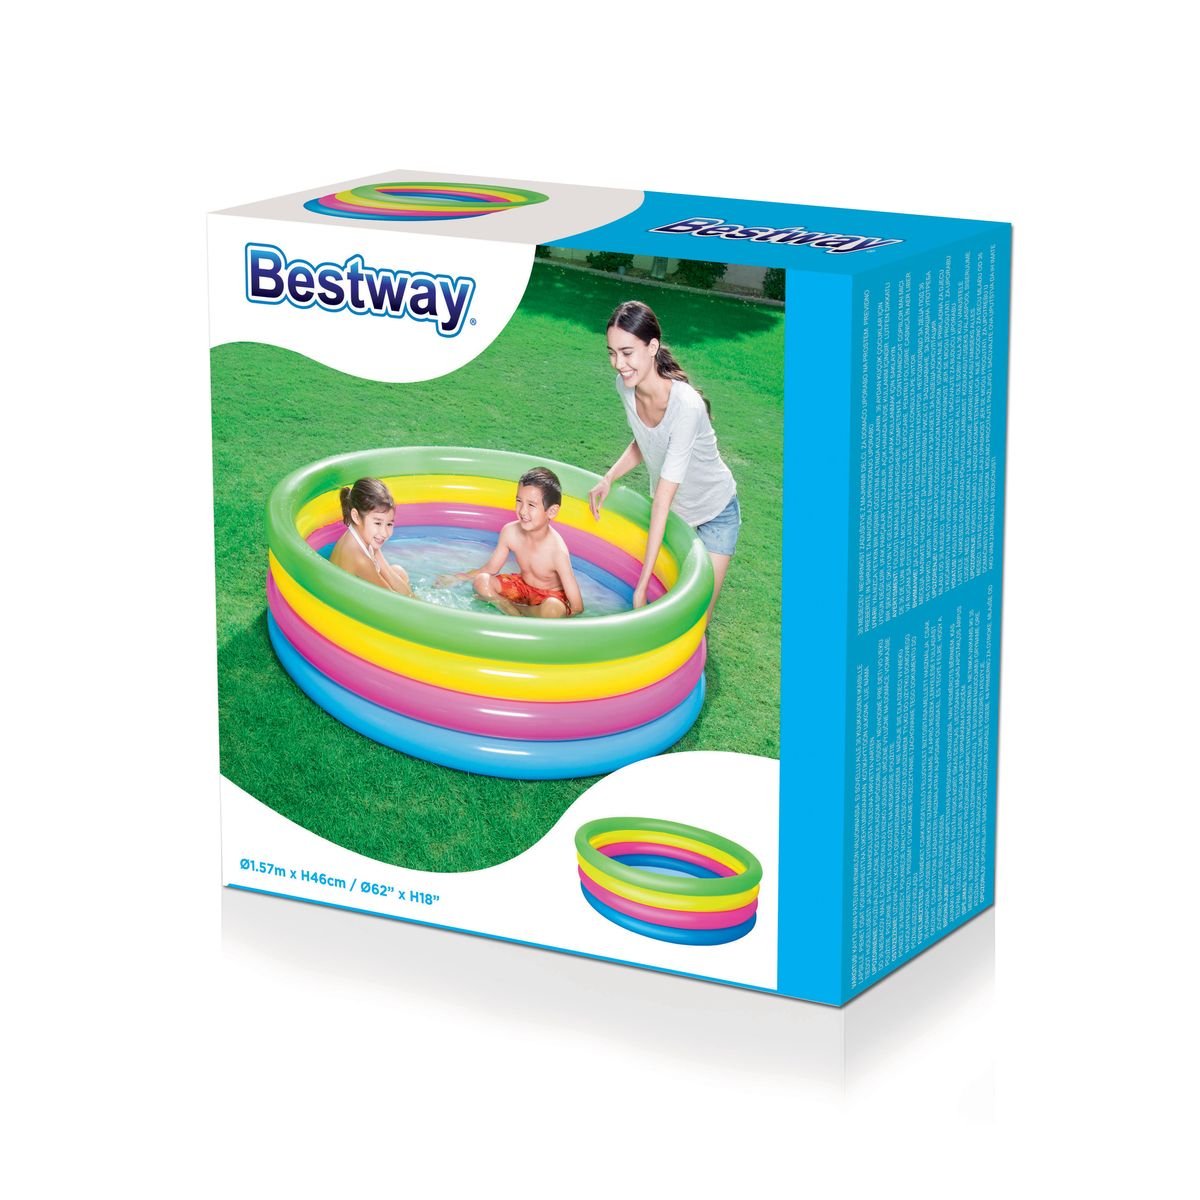 Bestway - Play Pool (62" x H18"/1.57m x H46cm)